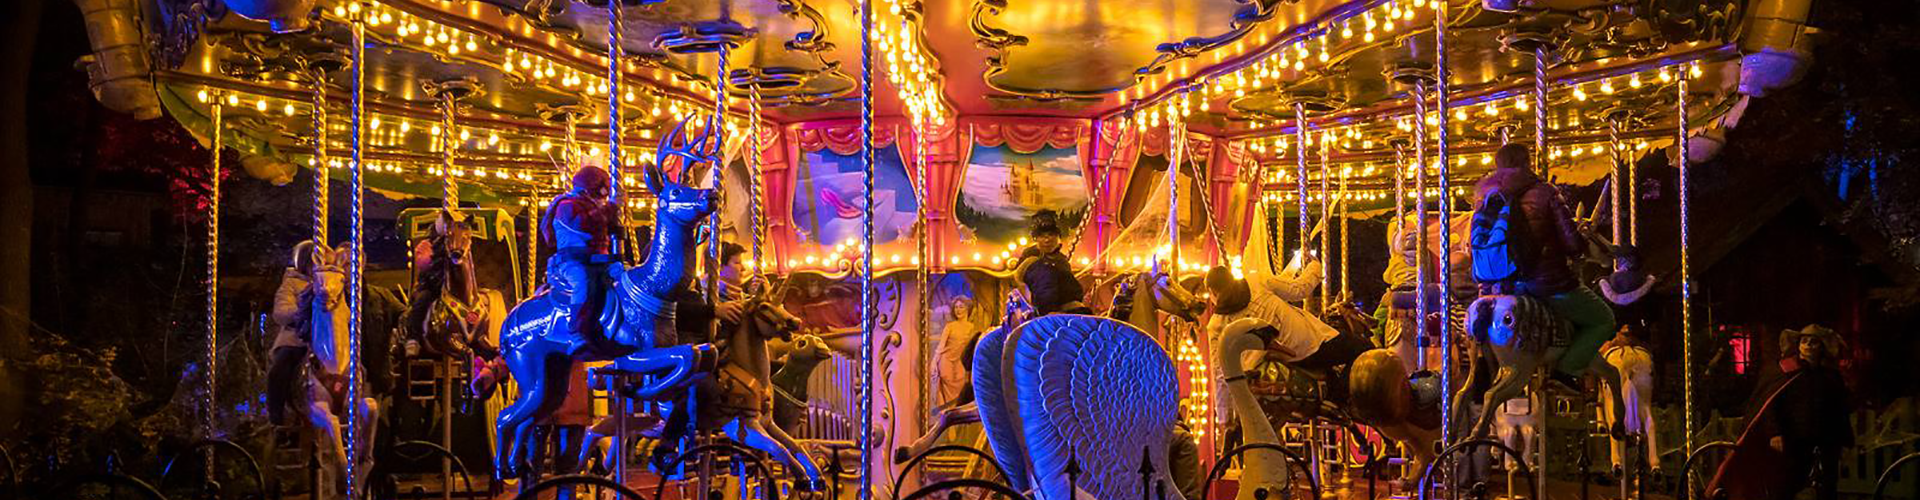 Fairy tail carousel